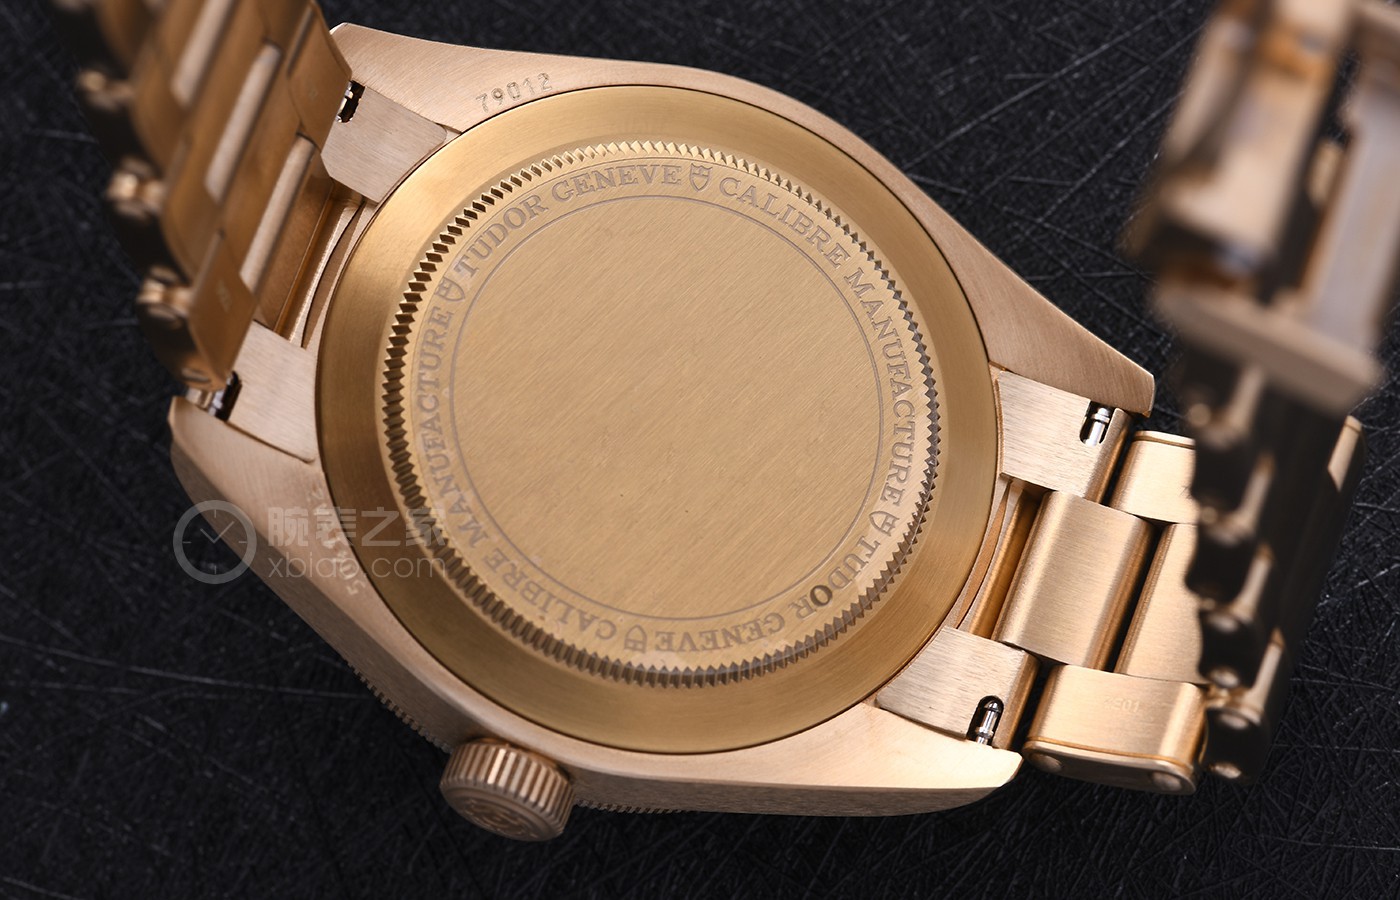 天字第一号：帝舵碧湾1958型新增青铜款腕表，玩转复古风范